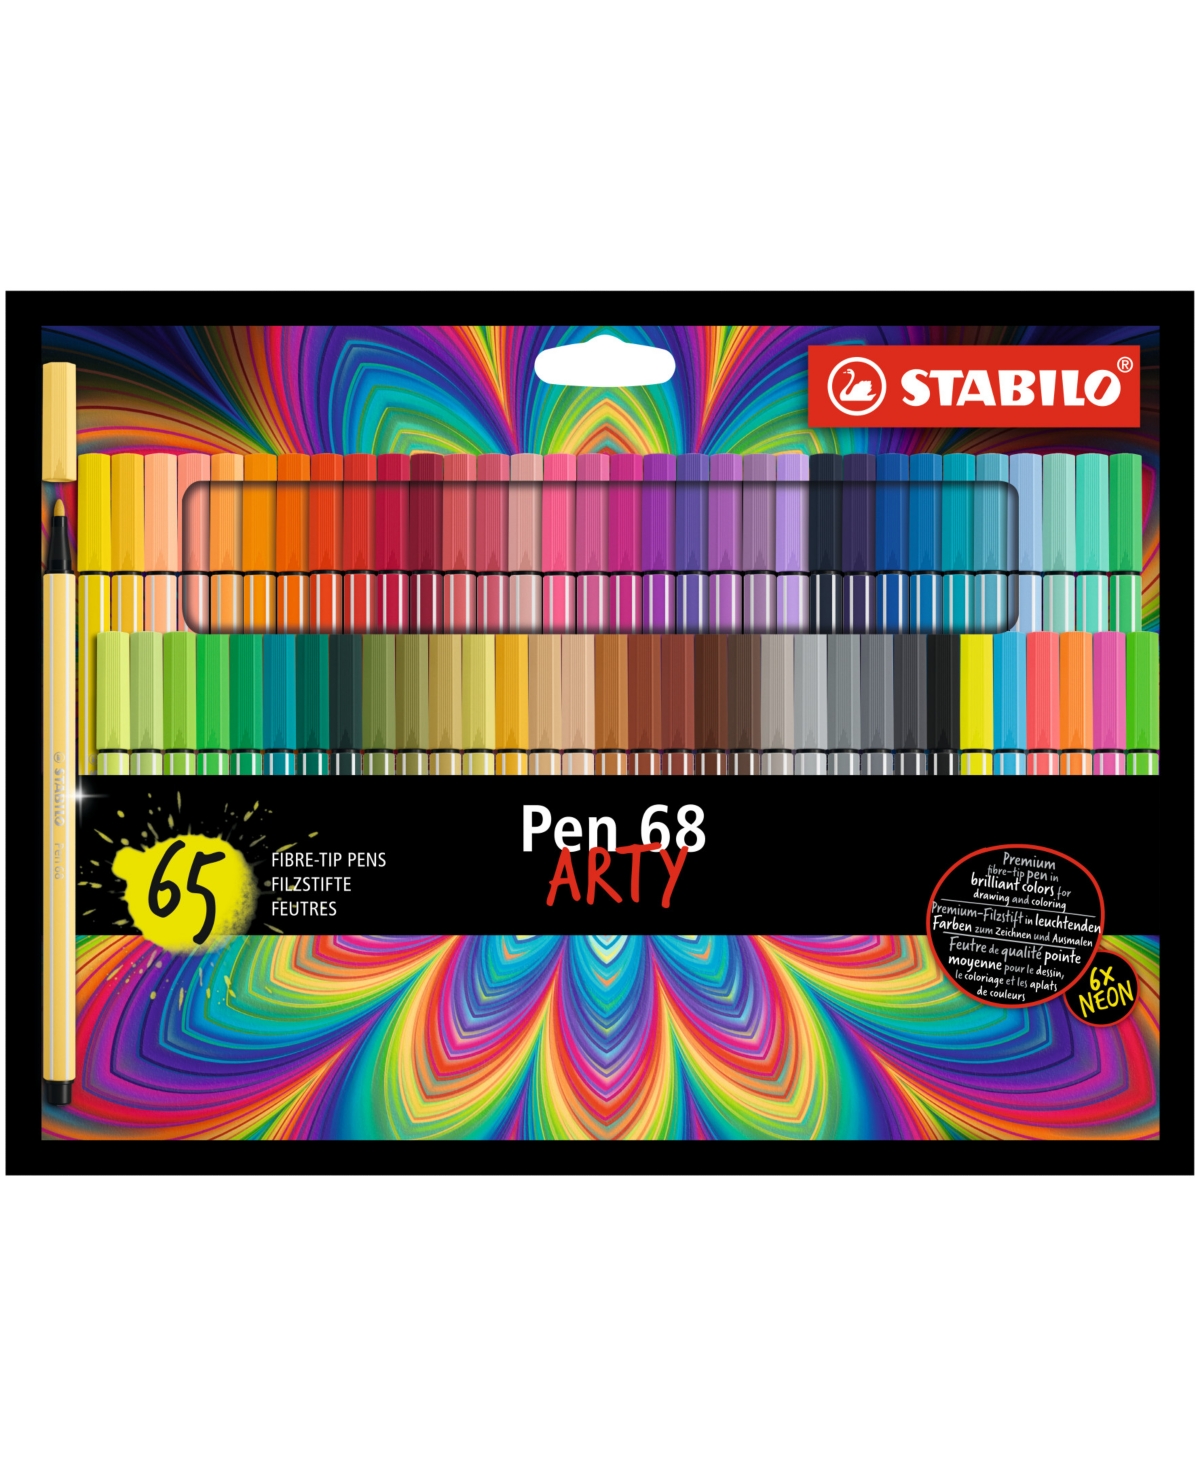 Pen 68 Pens Arty 65 Piece Set - Multi